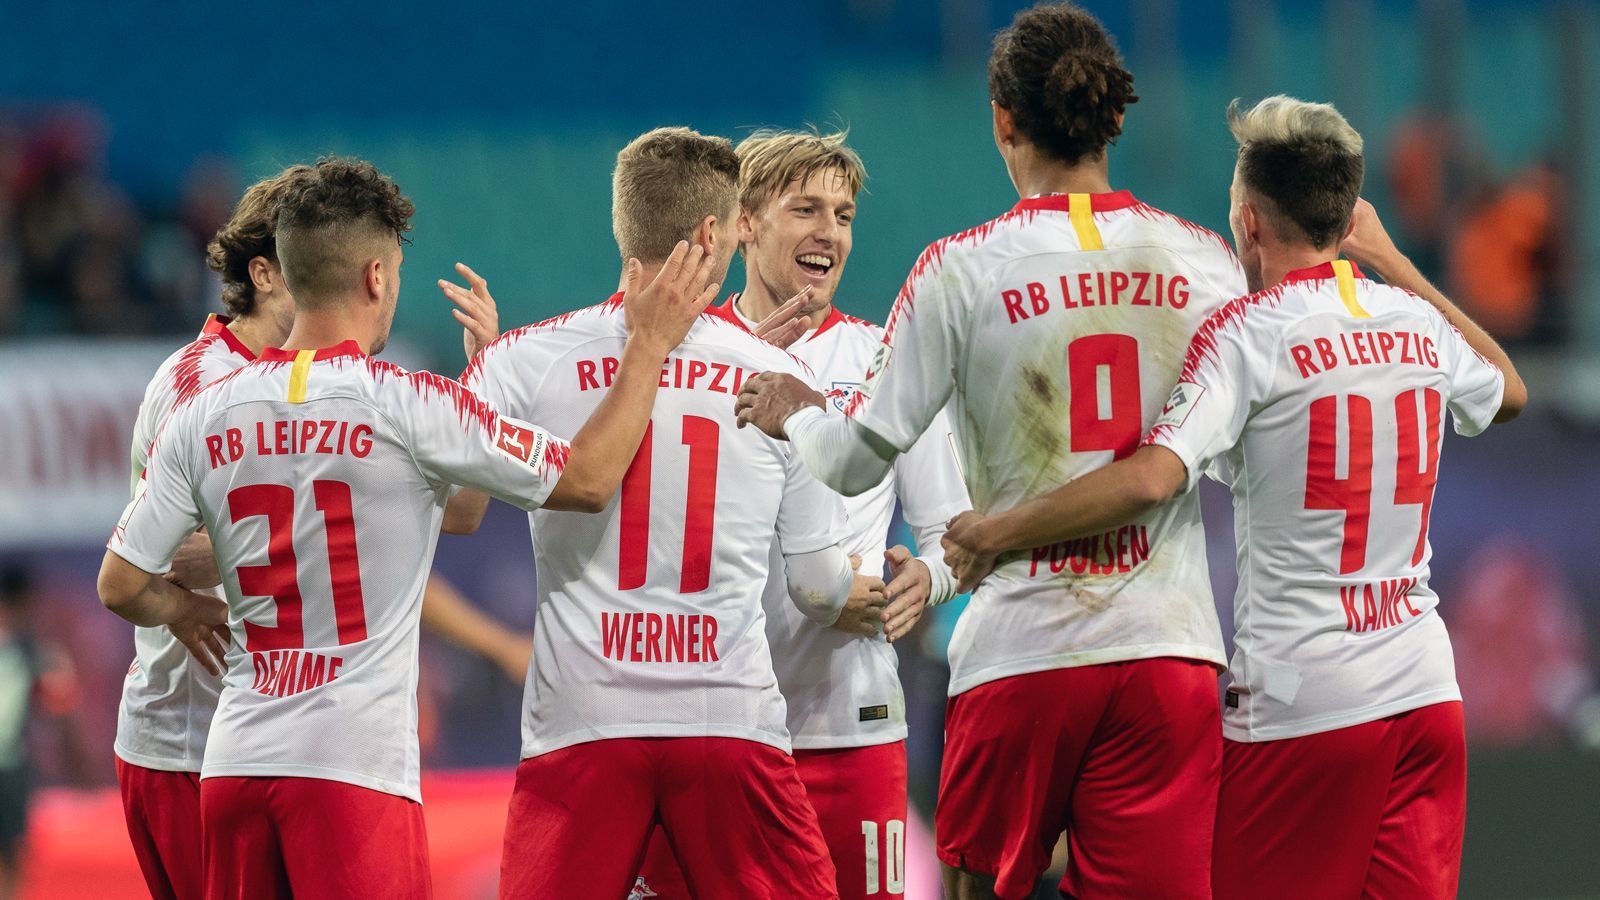 
                <strong>Platz 6 - RB Leipzig</strong><br>
                Durchschnittliches Gehalt: 1,76 Millionen Euro
              